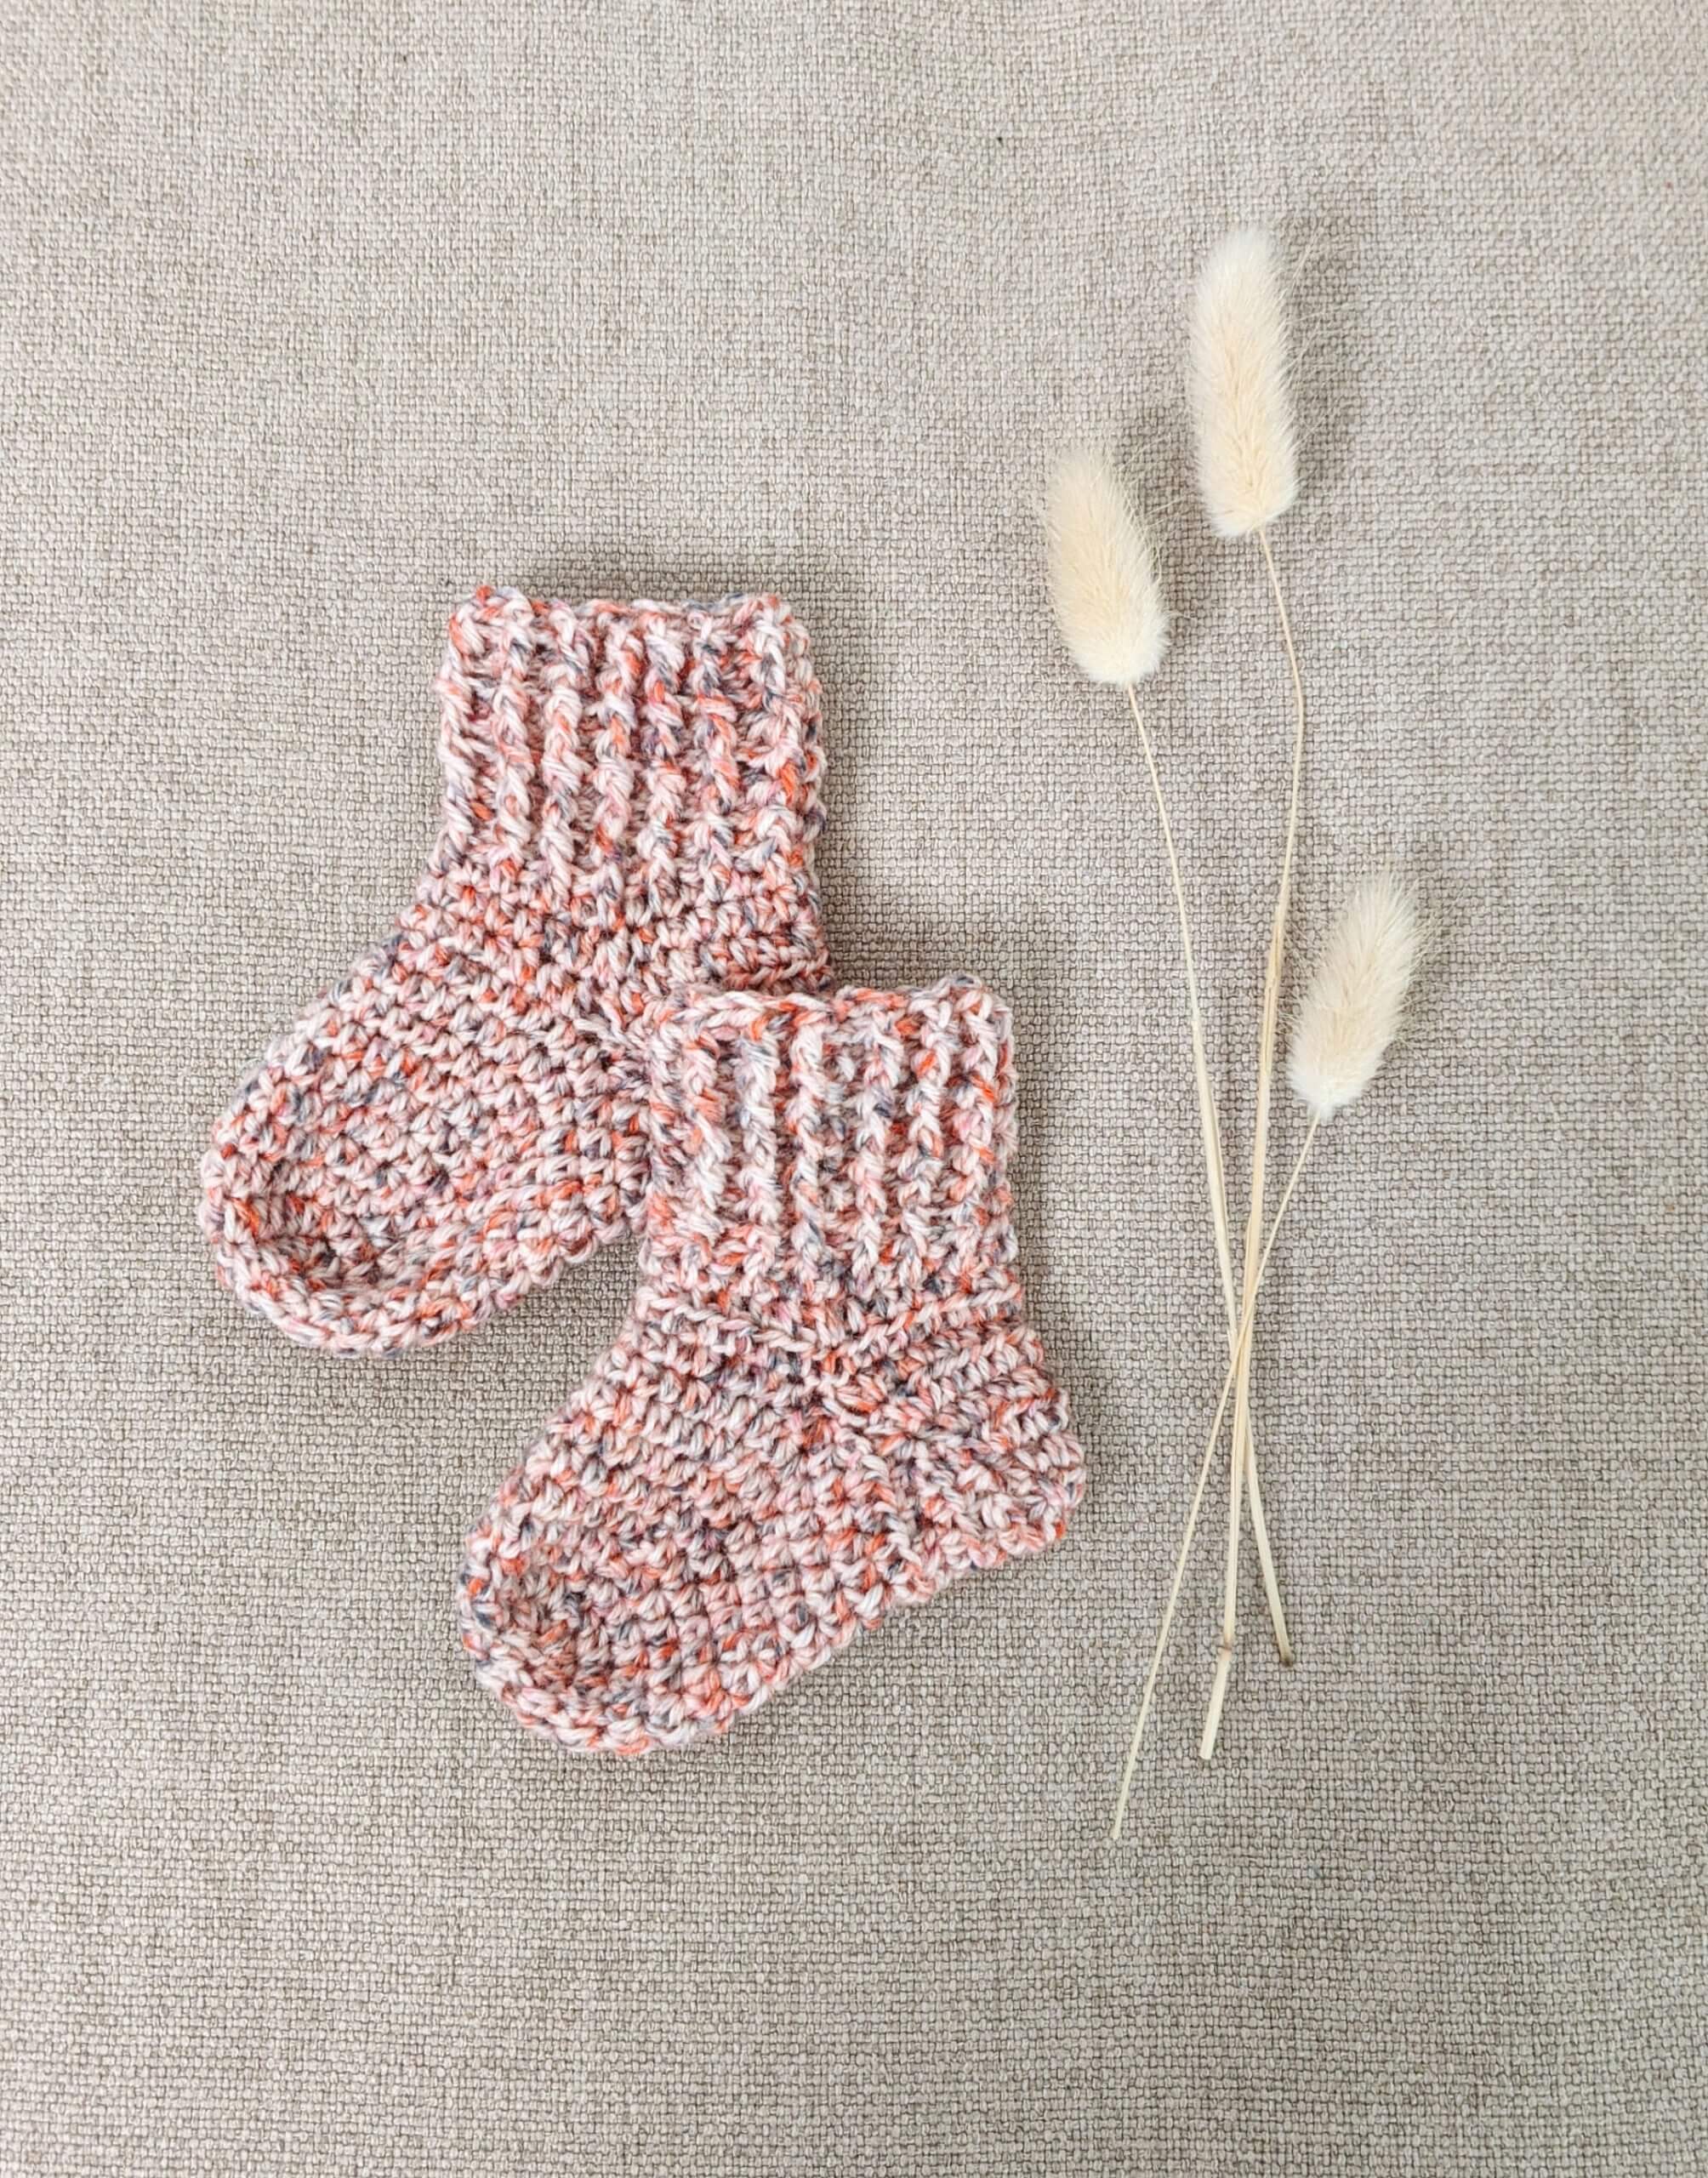 Crochet Baby Romper Calming Green - Free Pattern